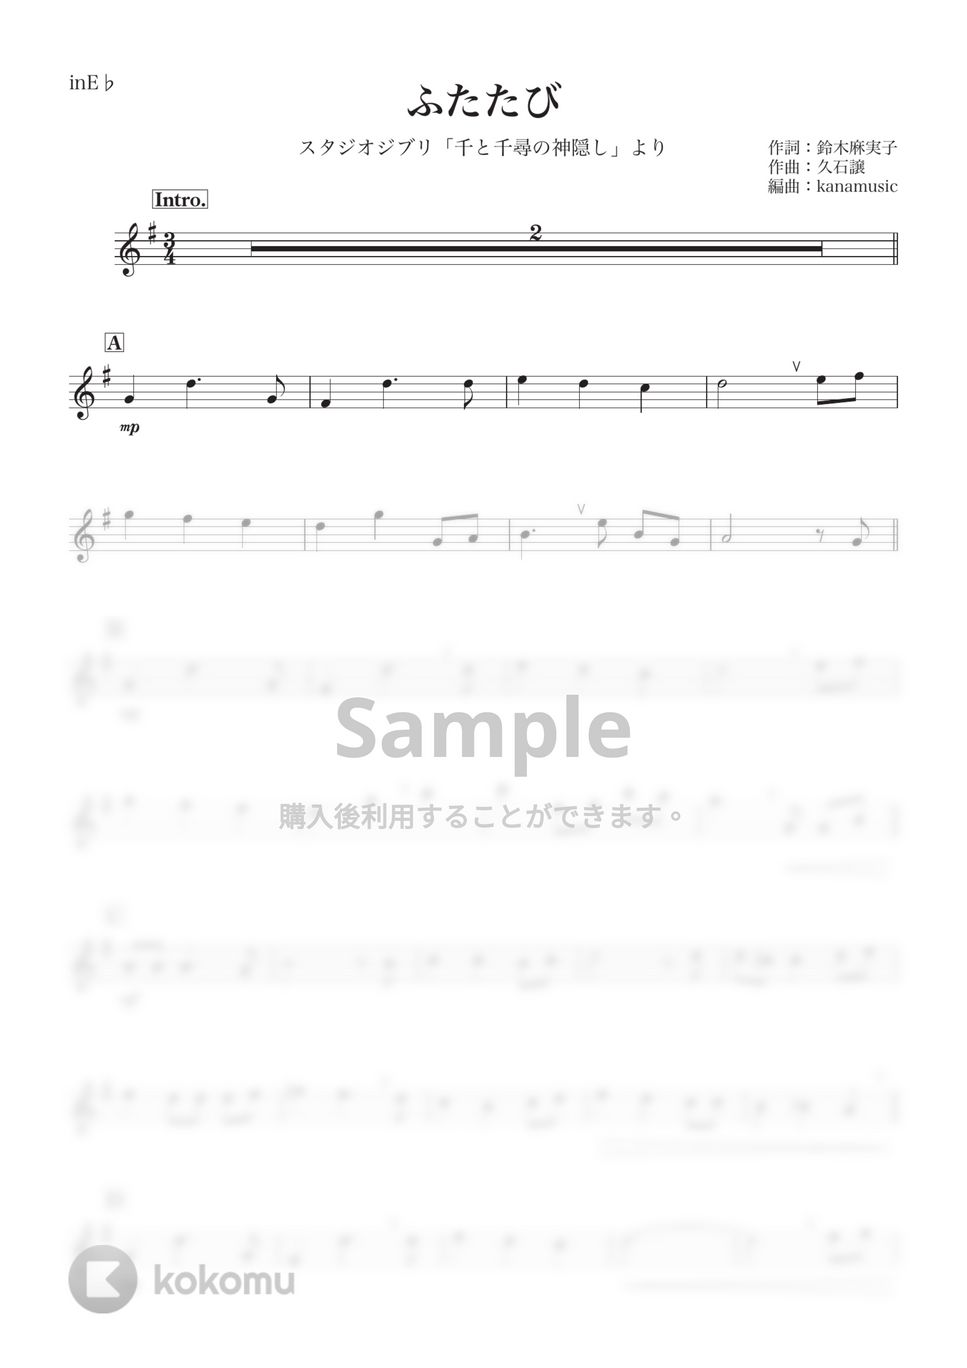 千と千尋の神隠し - ふたたび (E♭) by kanamusic